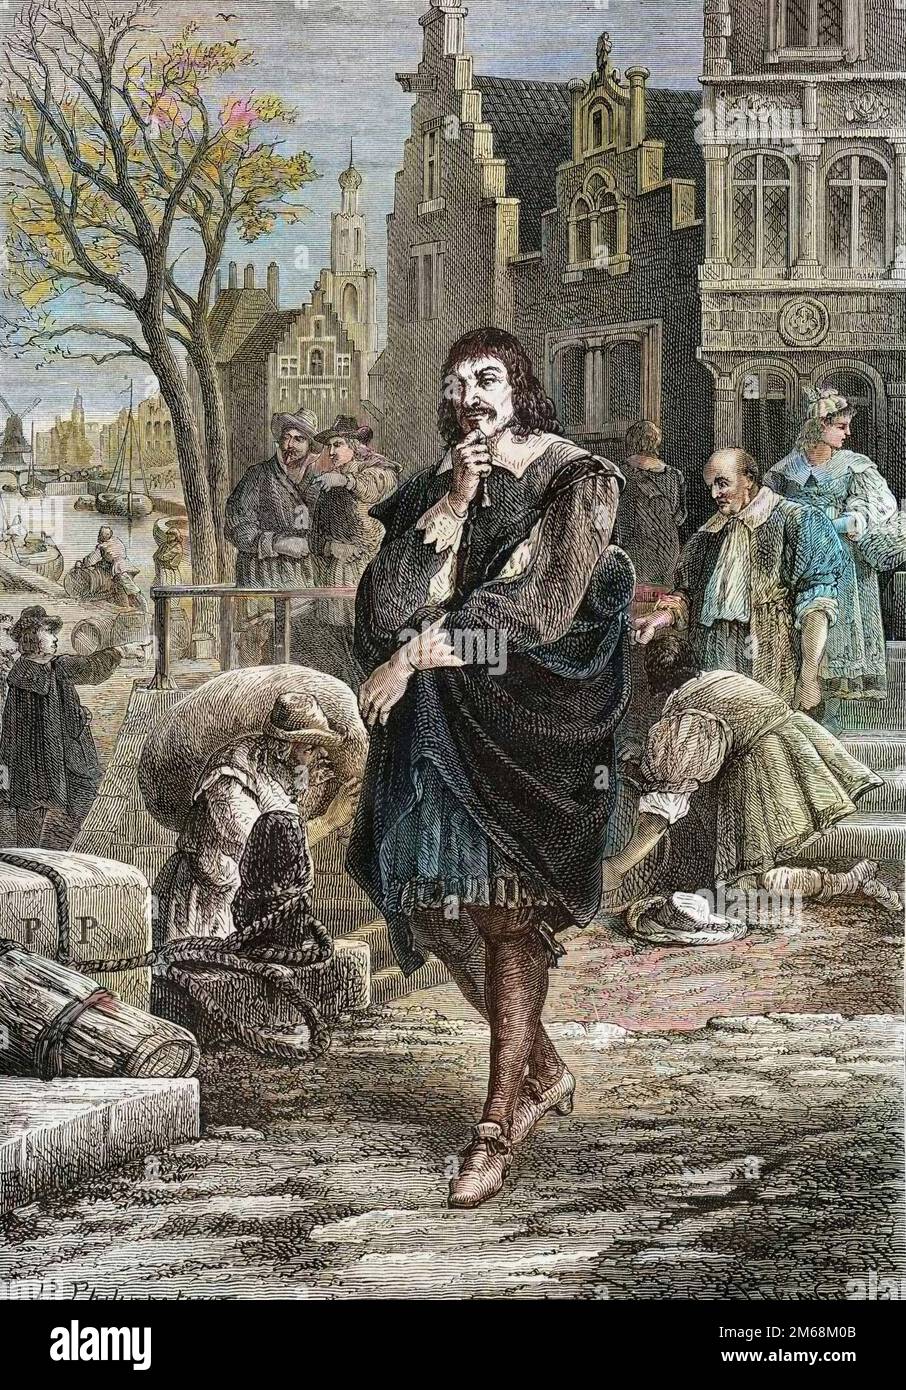 Rene Descartes (1596-1650), Philosophe et Mathematicien francais se promenant dans les rues d'Amsterdam - Descartes in Amsterdam Stockfoto